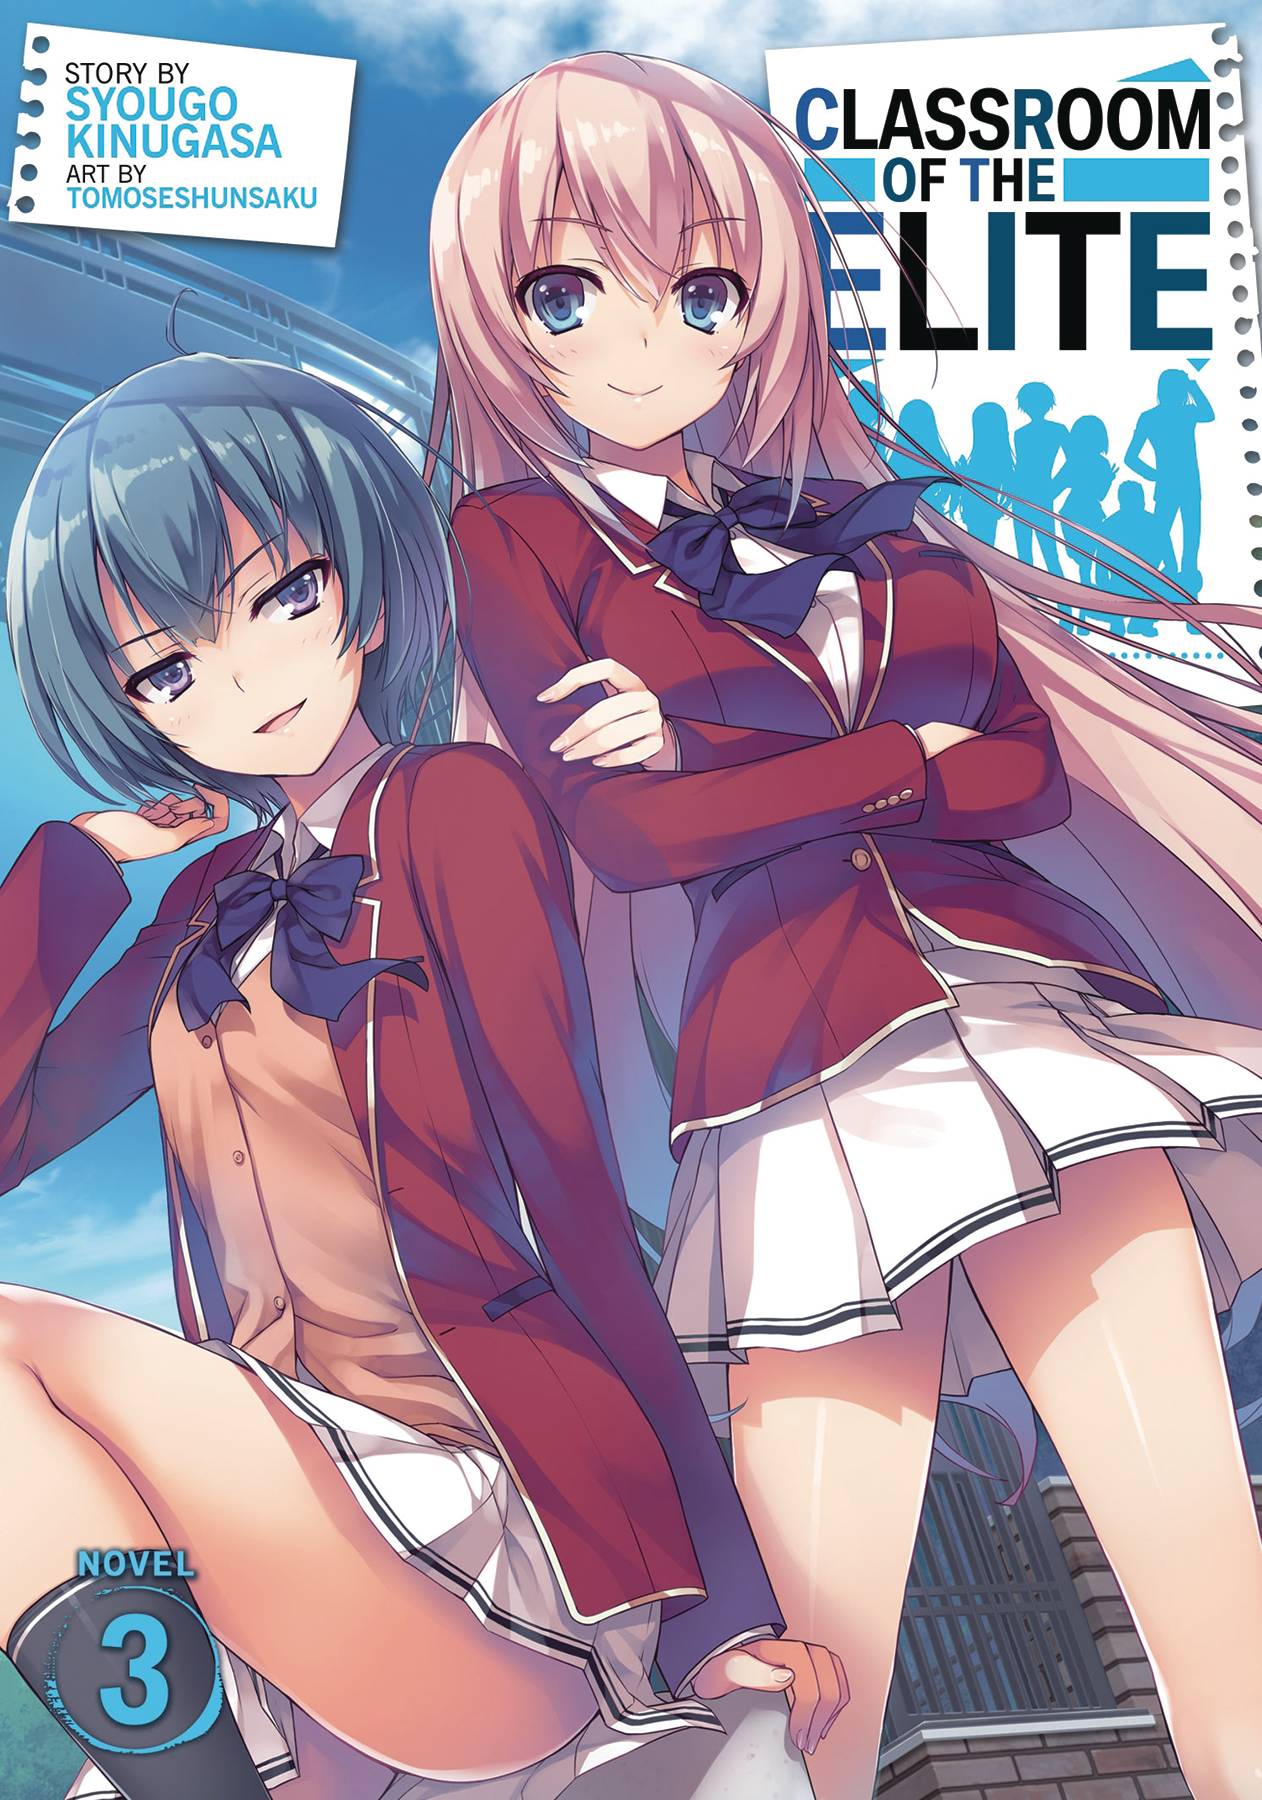 Classroom of Elite Light Novel Volume 3